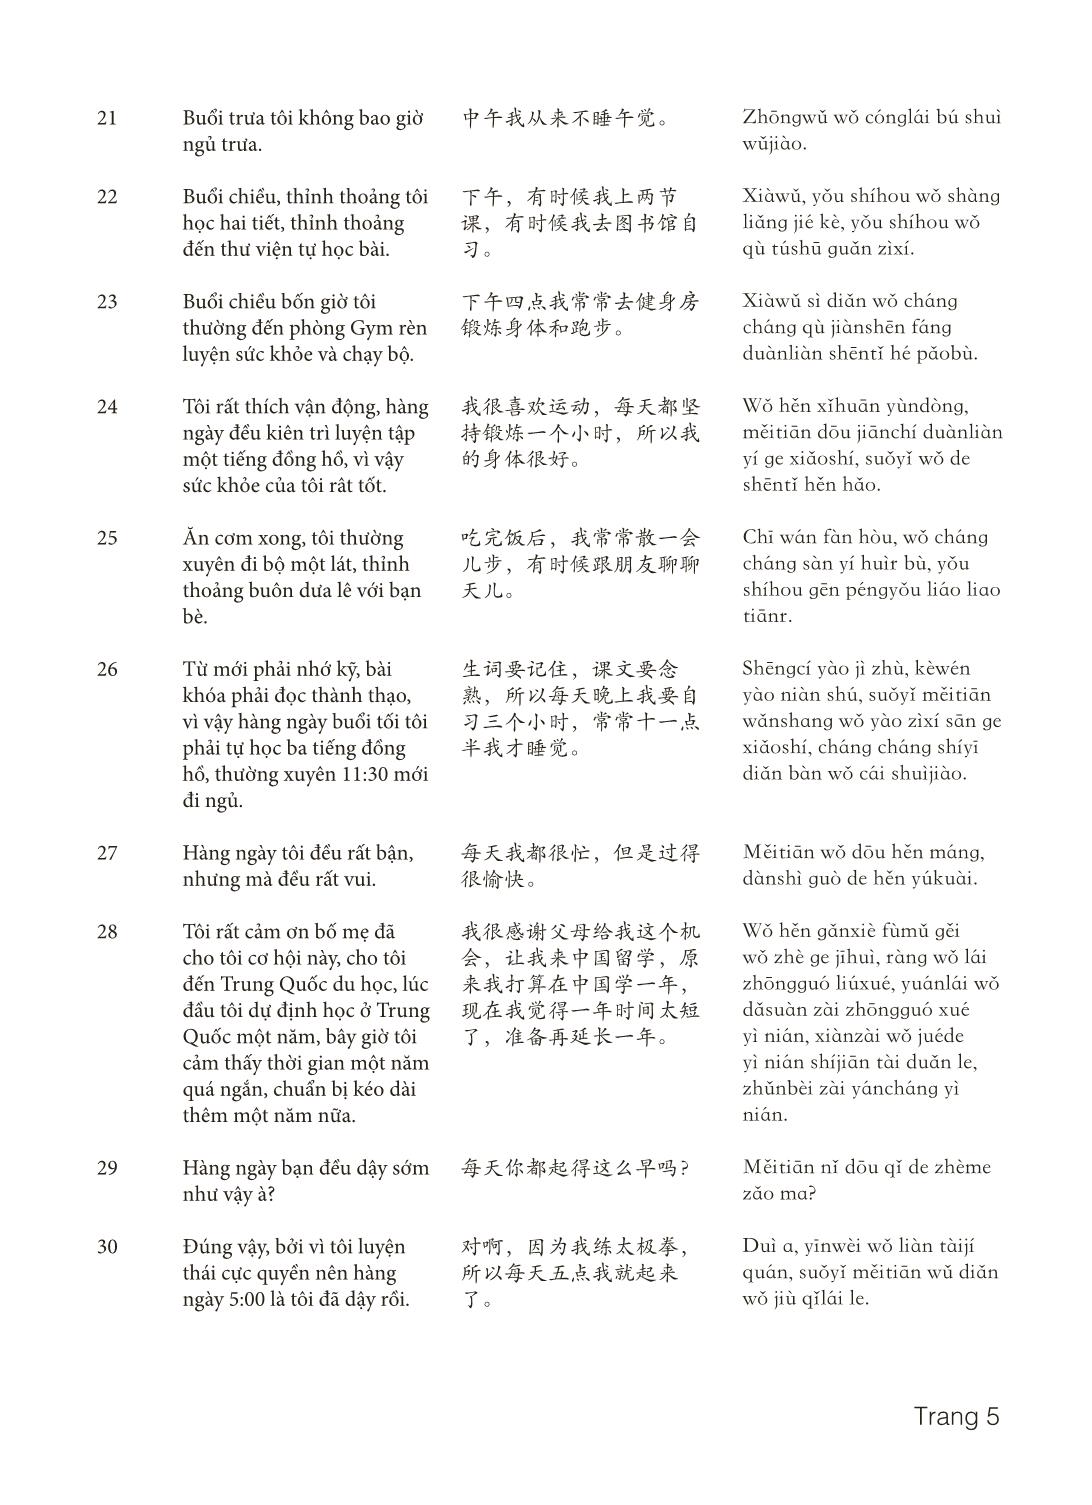 3000 Câu đàm thoại tiếng Hoa - Phần 14 trang 5